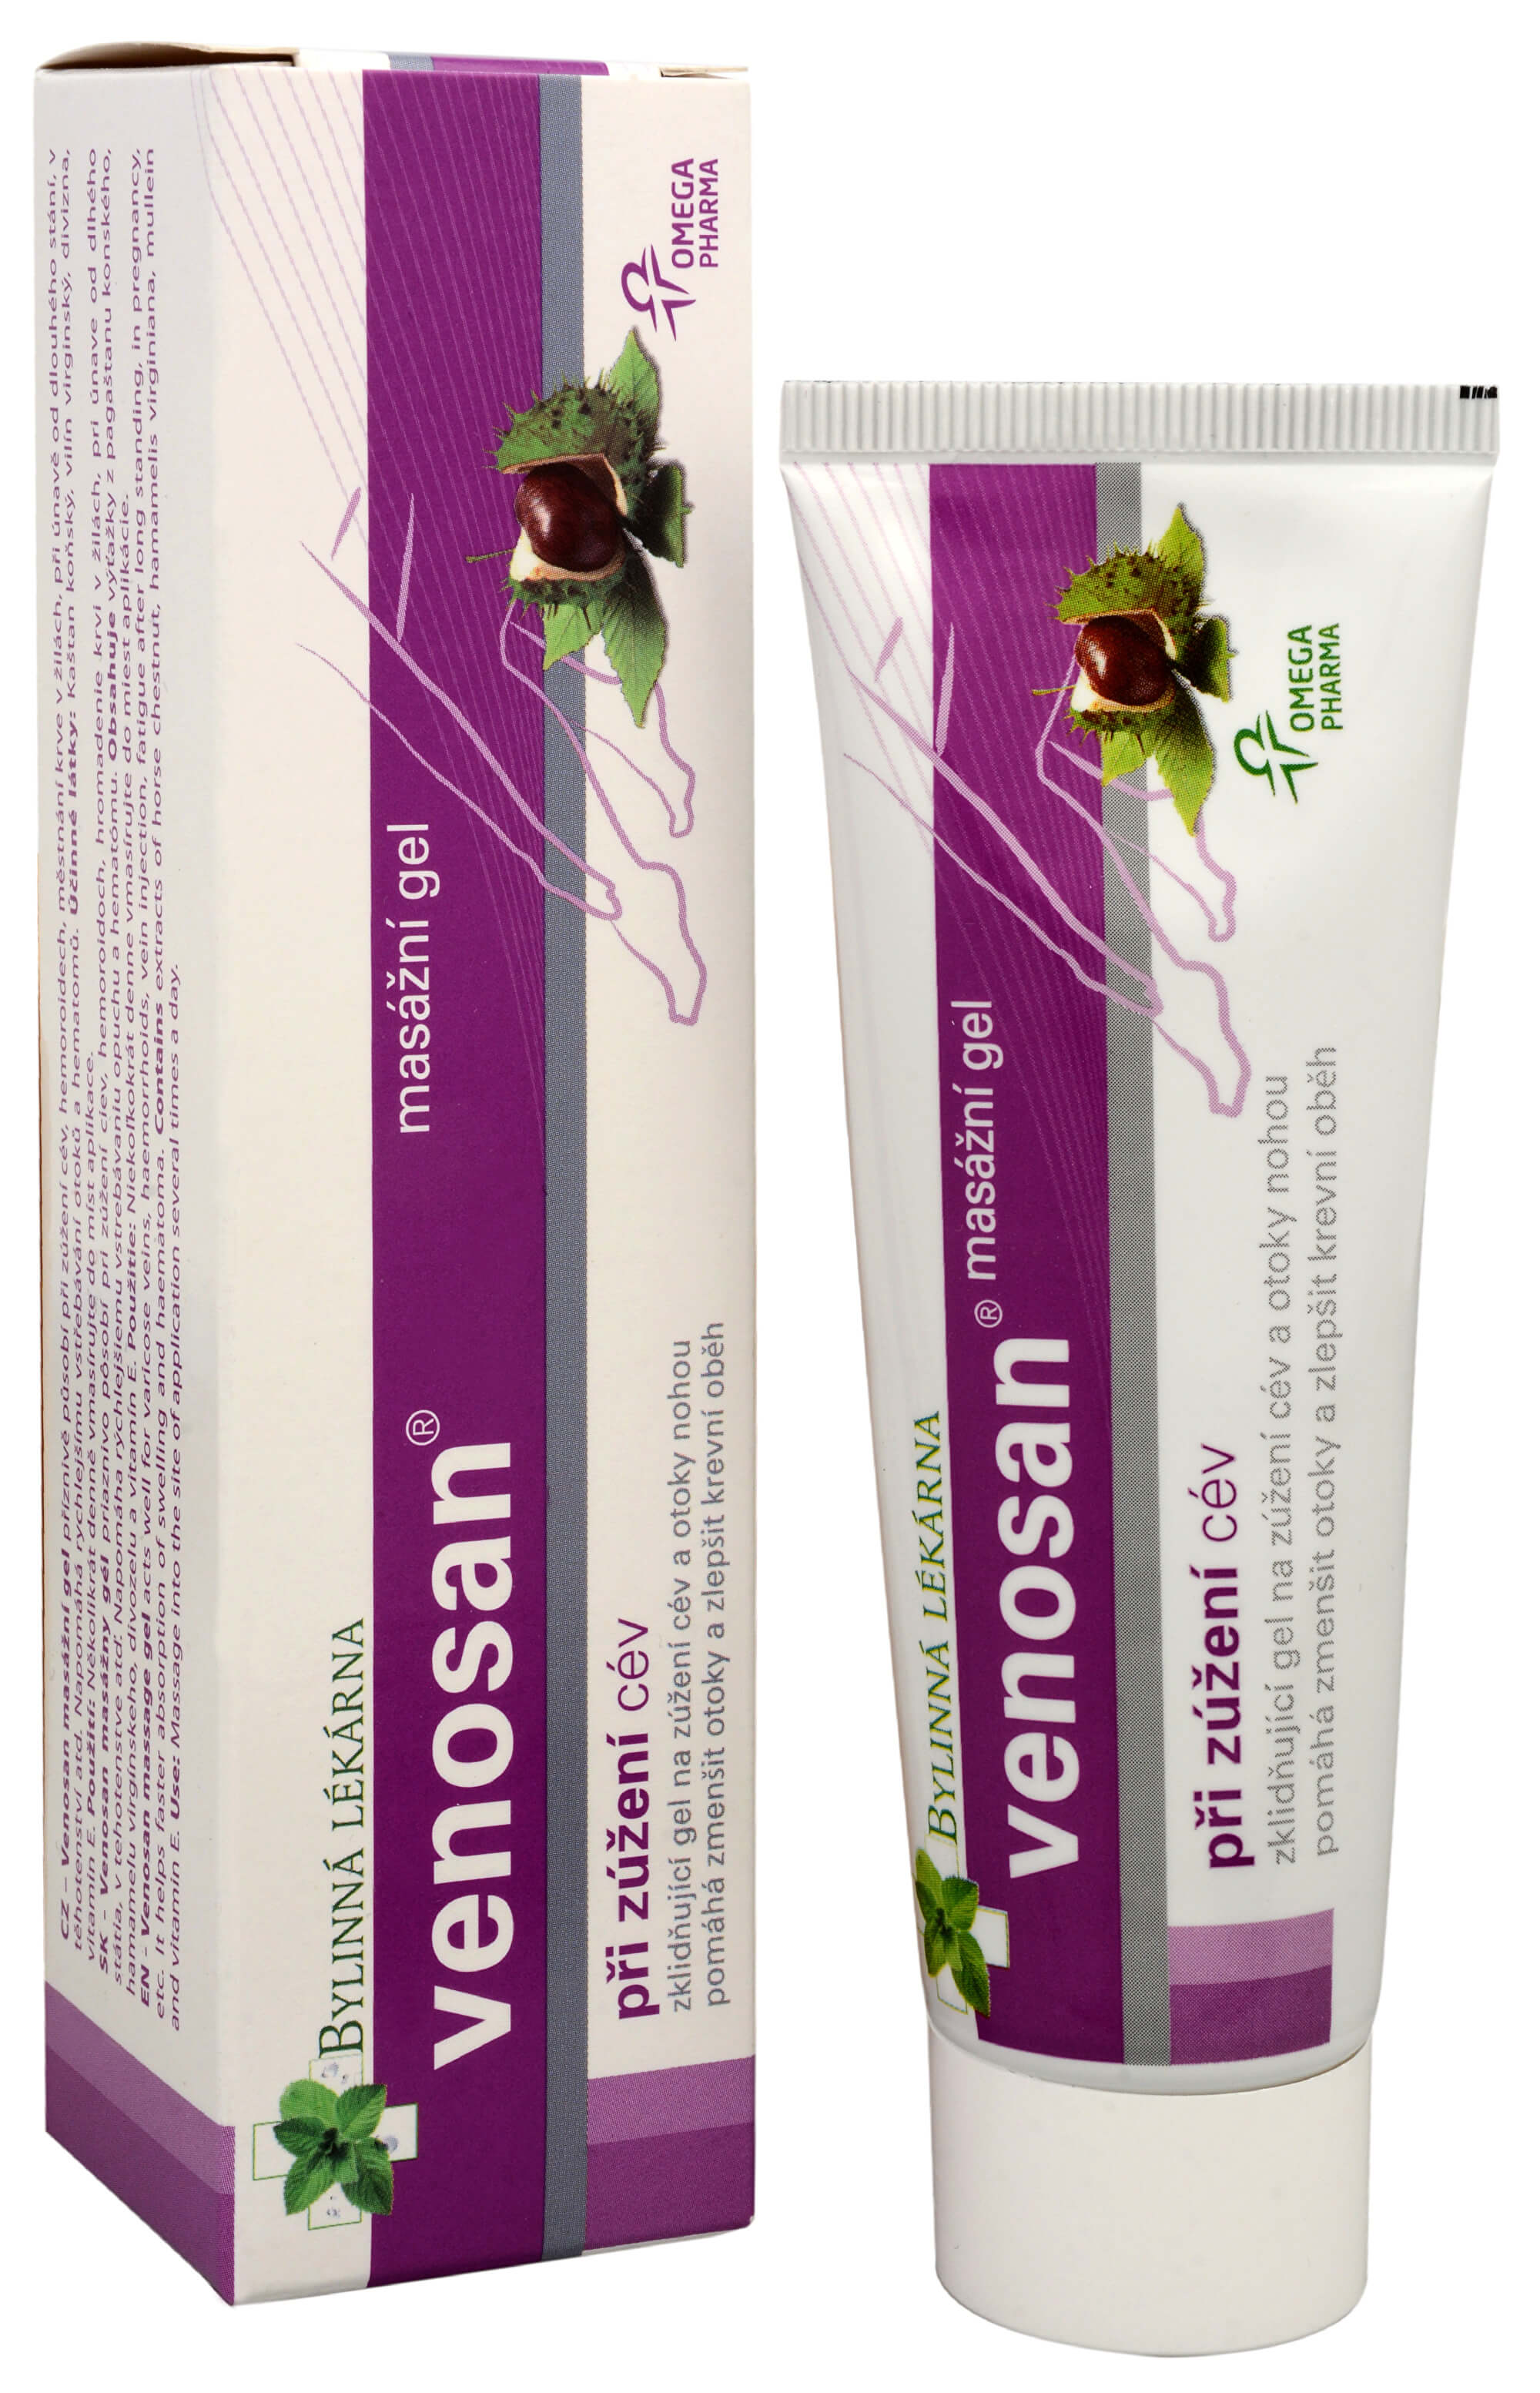 Zobrazit detail výrobku Omega Pharma Venosan masážní gel 50 g + 2 měsíce na vrácení zboží